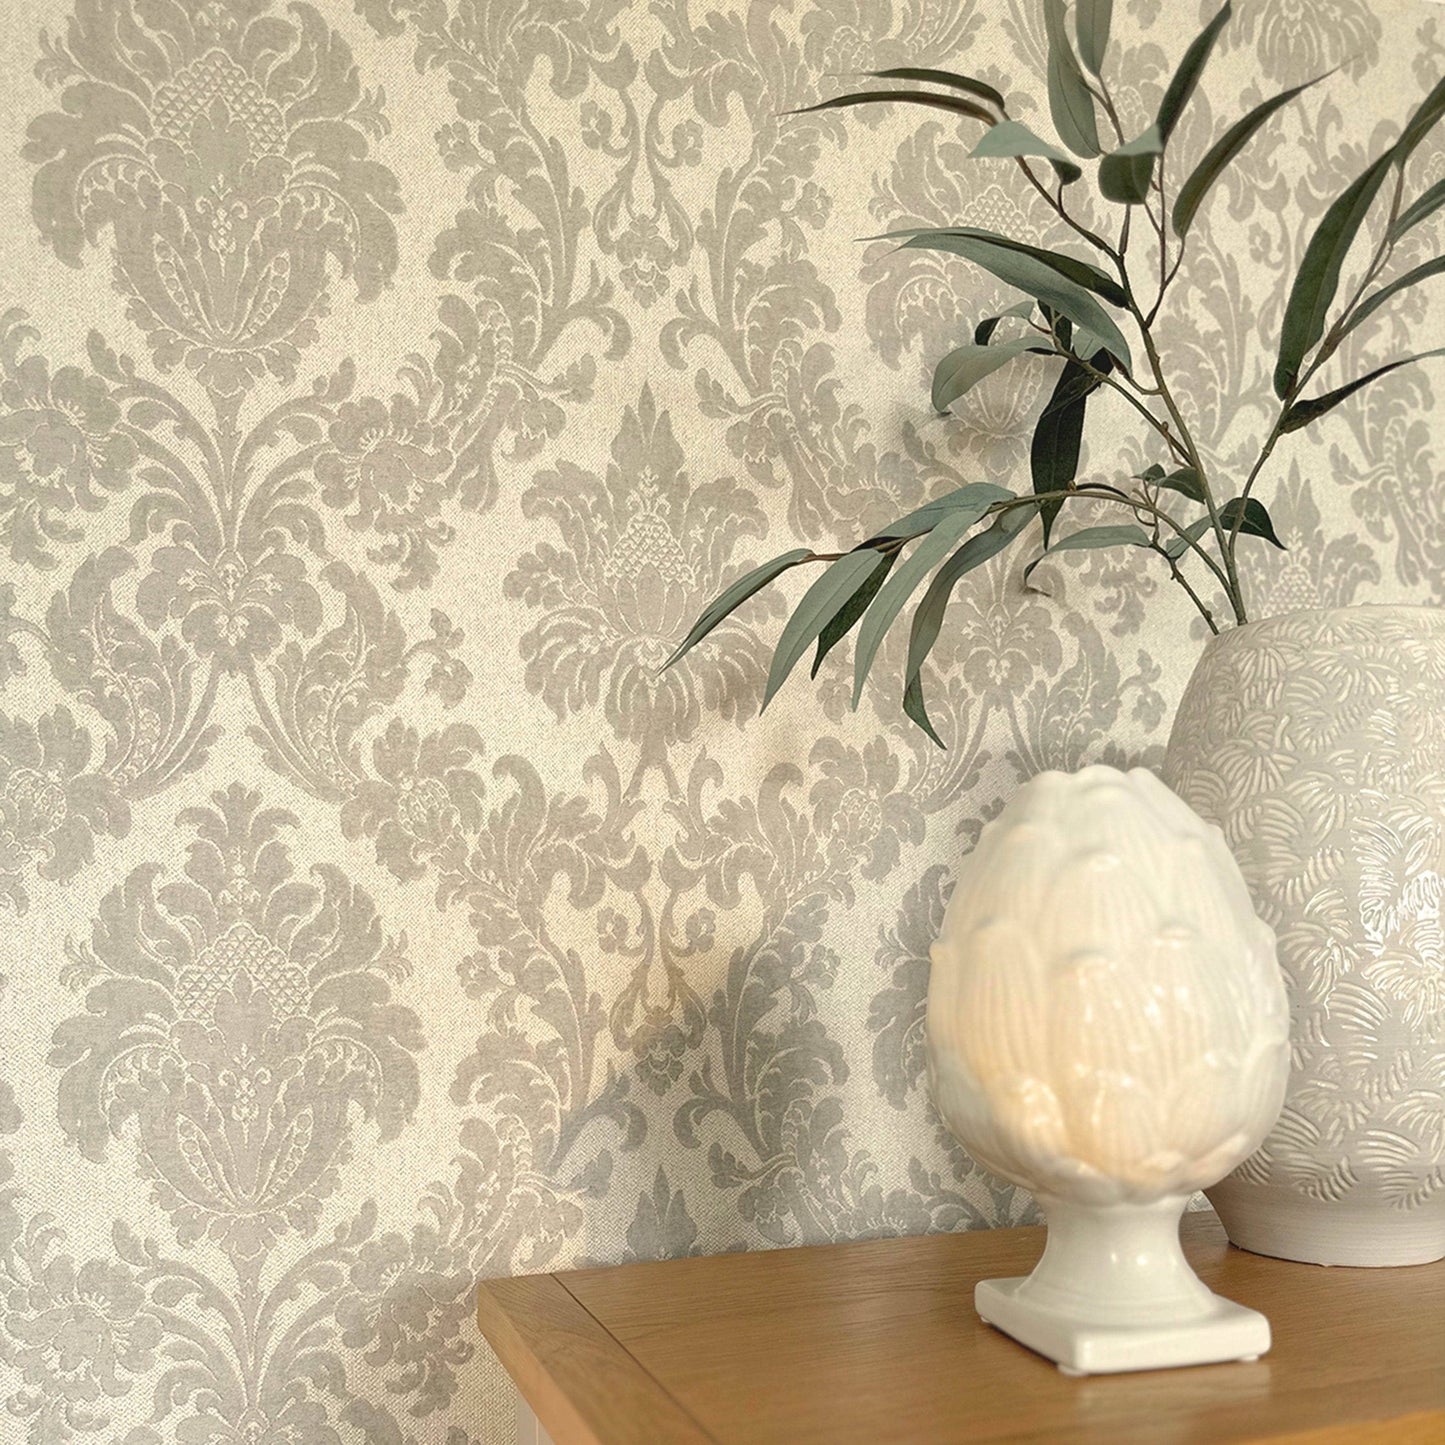 Wallpaper  -  Belgravia Ciara Damask Grey Wallpaper - 4409  -  60009424